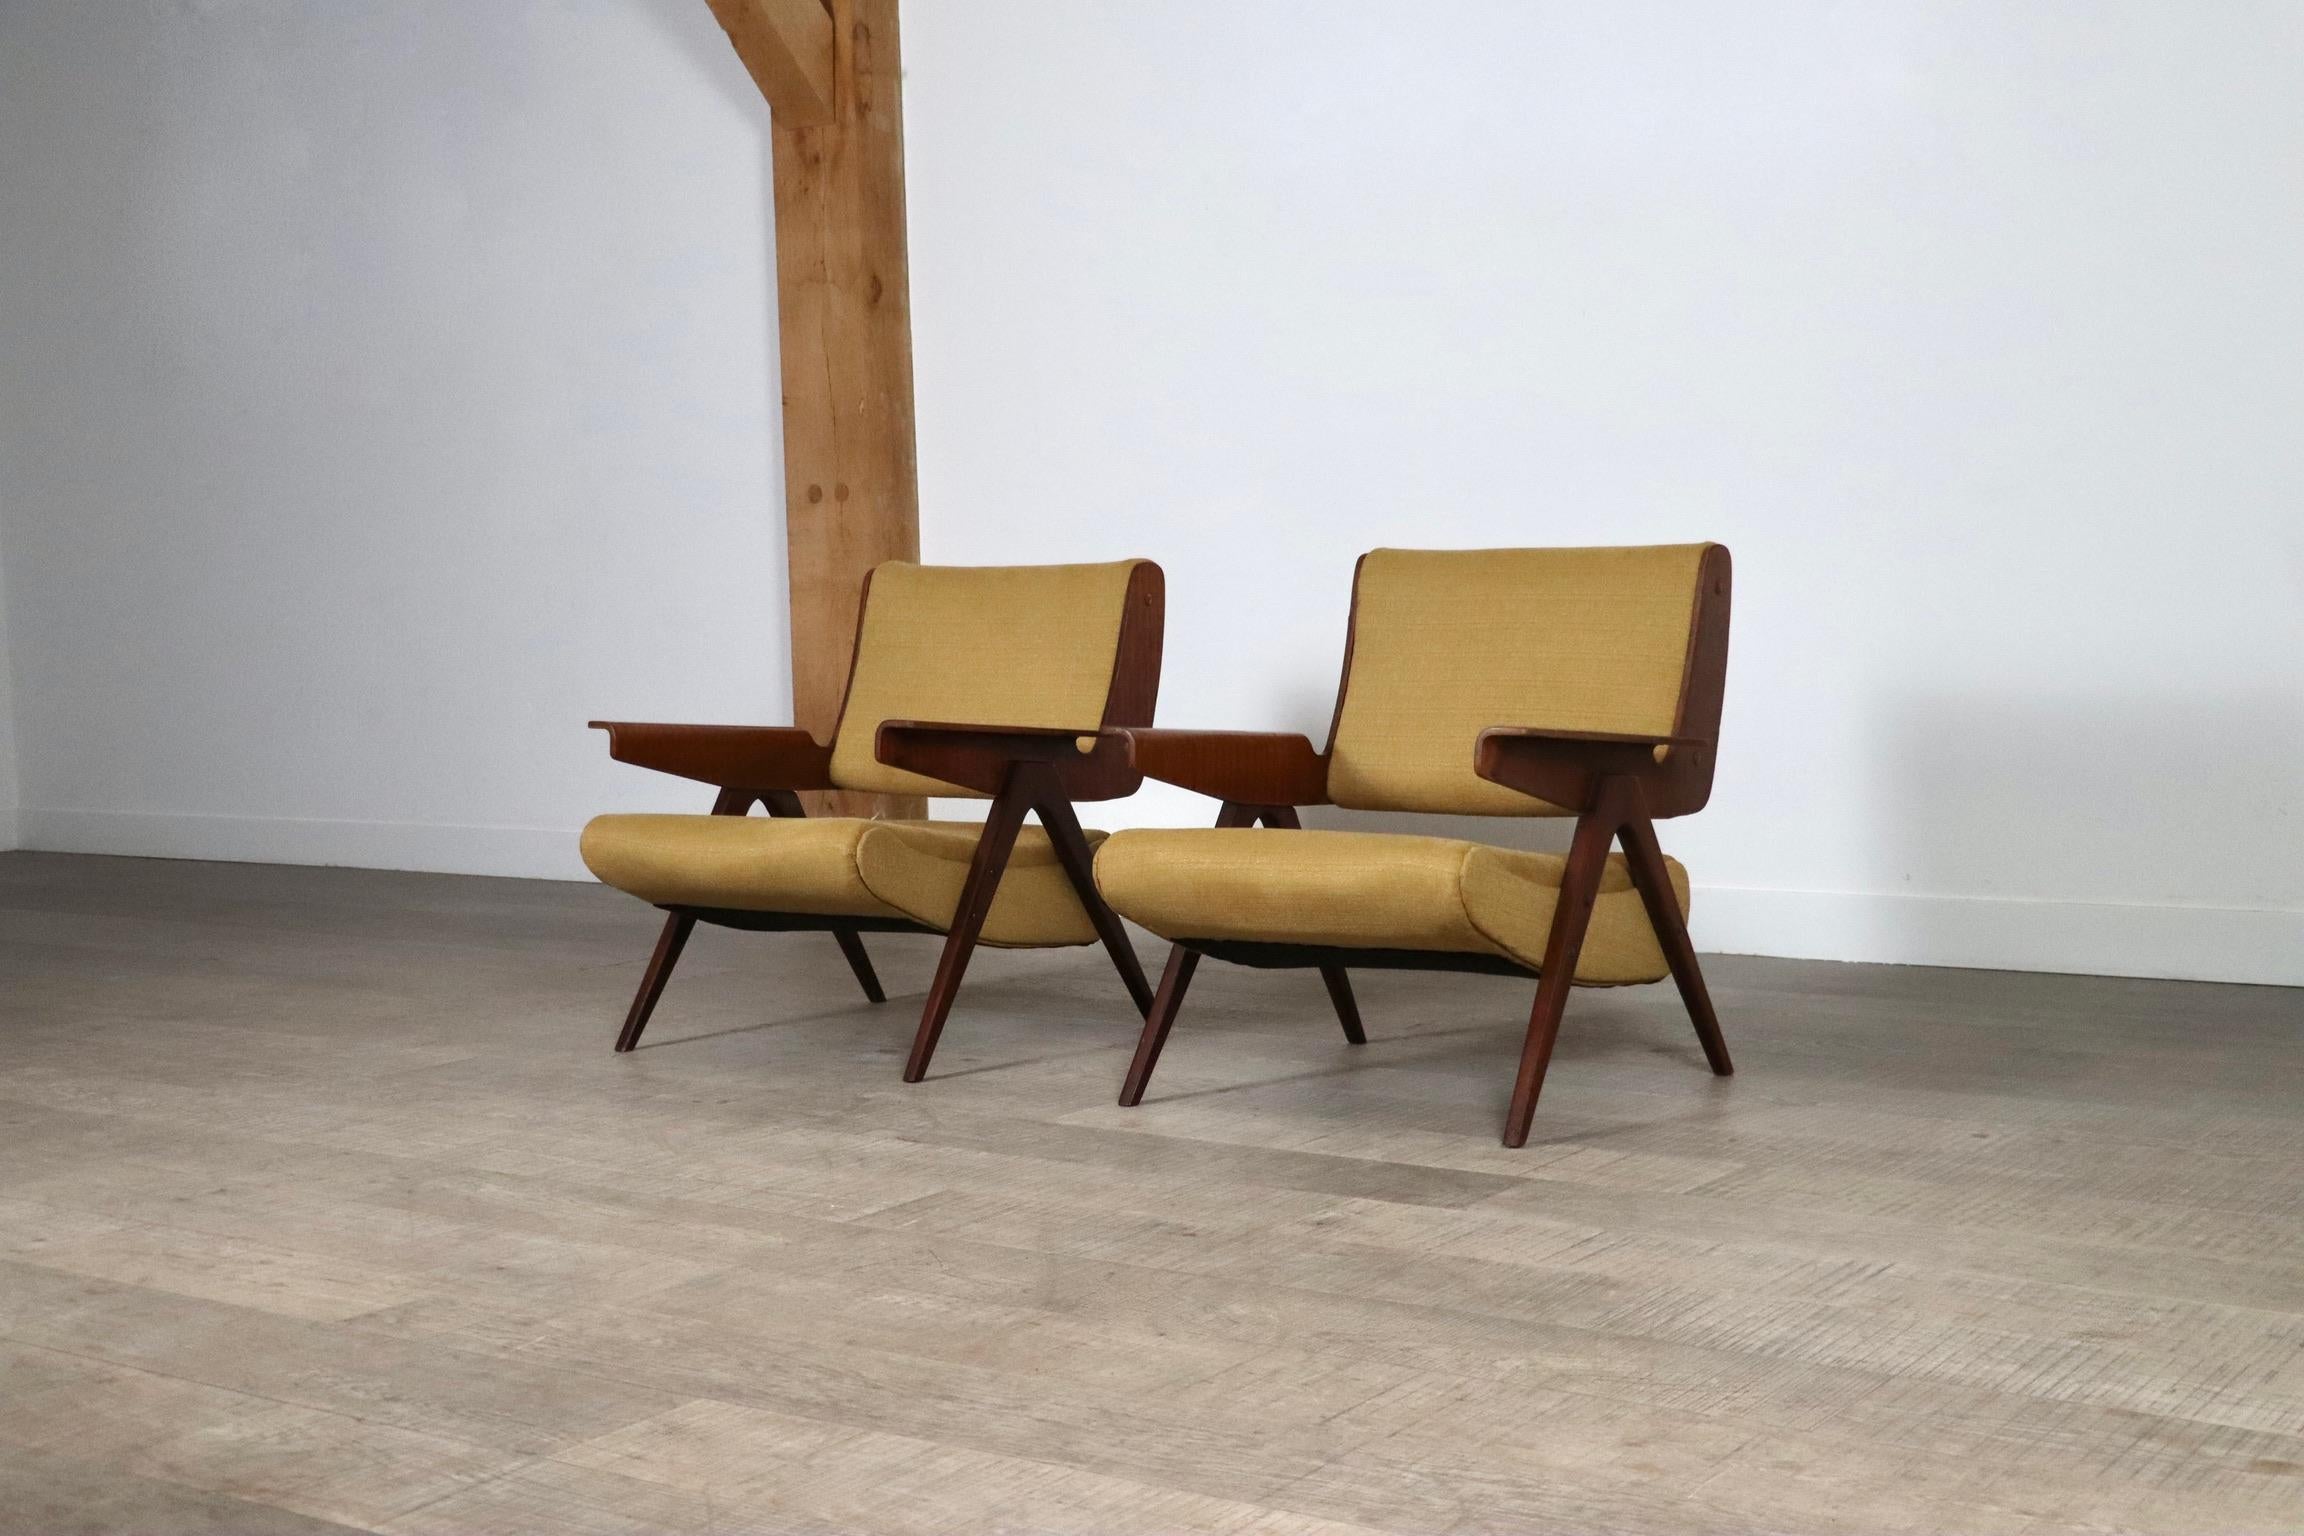 Incroyable paire de chaises modèle 831 de Gianfranco Frattini pour Cassina, années 1950. Ces modèles de chaises sont exceptionnellement rares. Le fantastique design du célèbre designer italien Gianfranco Frattini montre ses caractéristiques